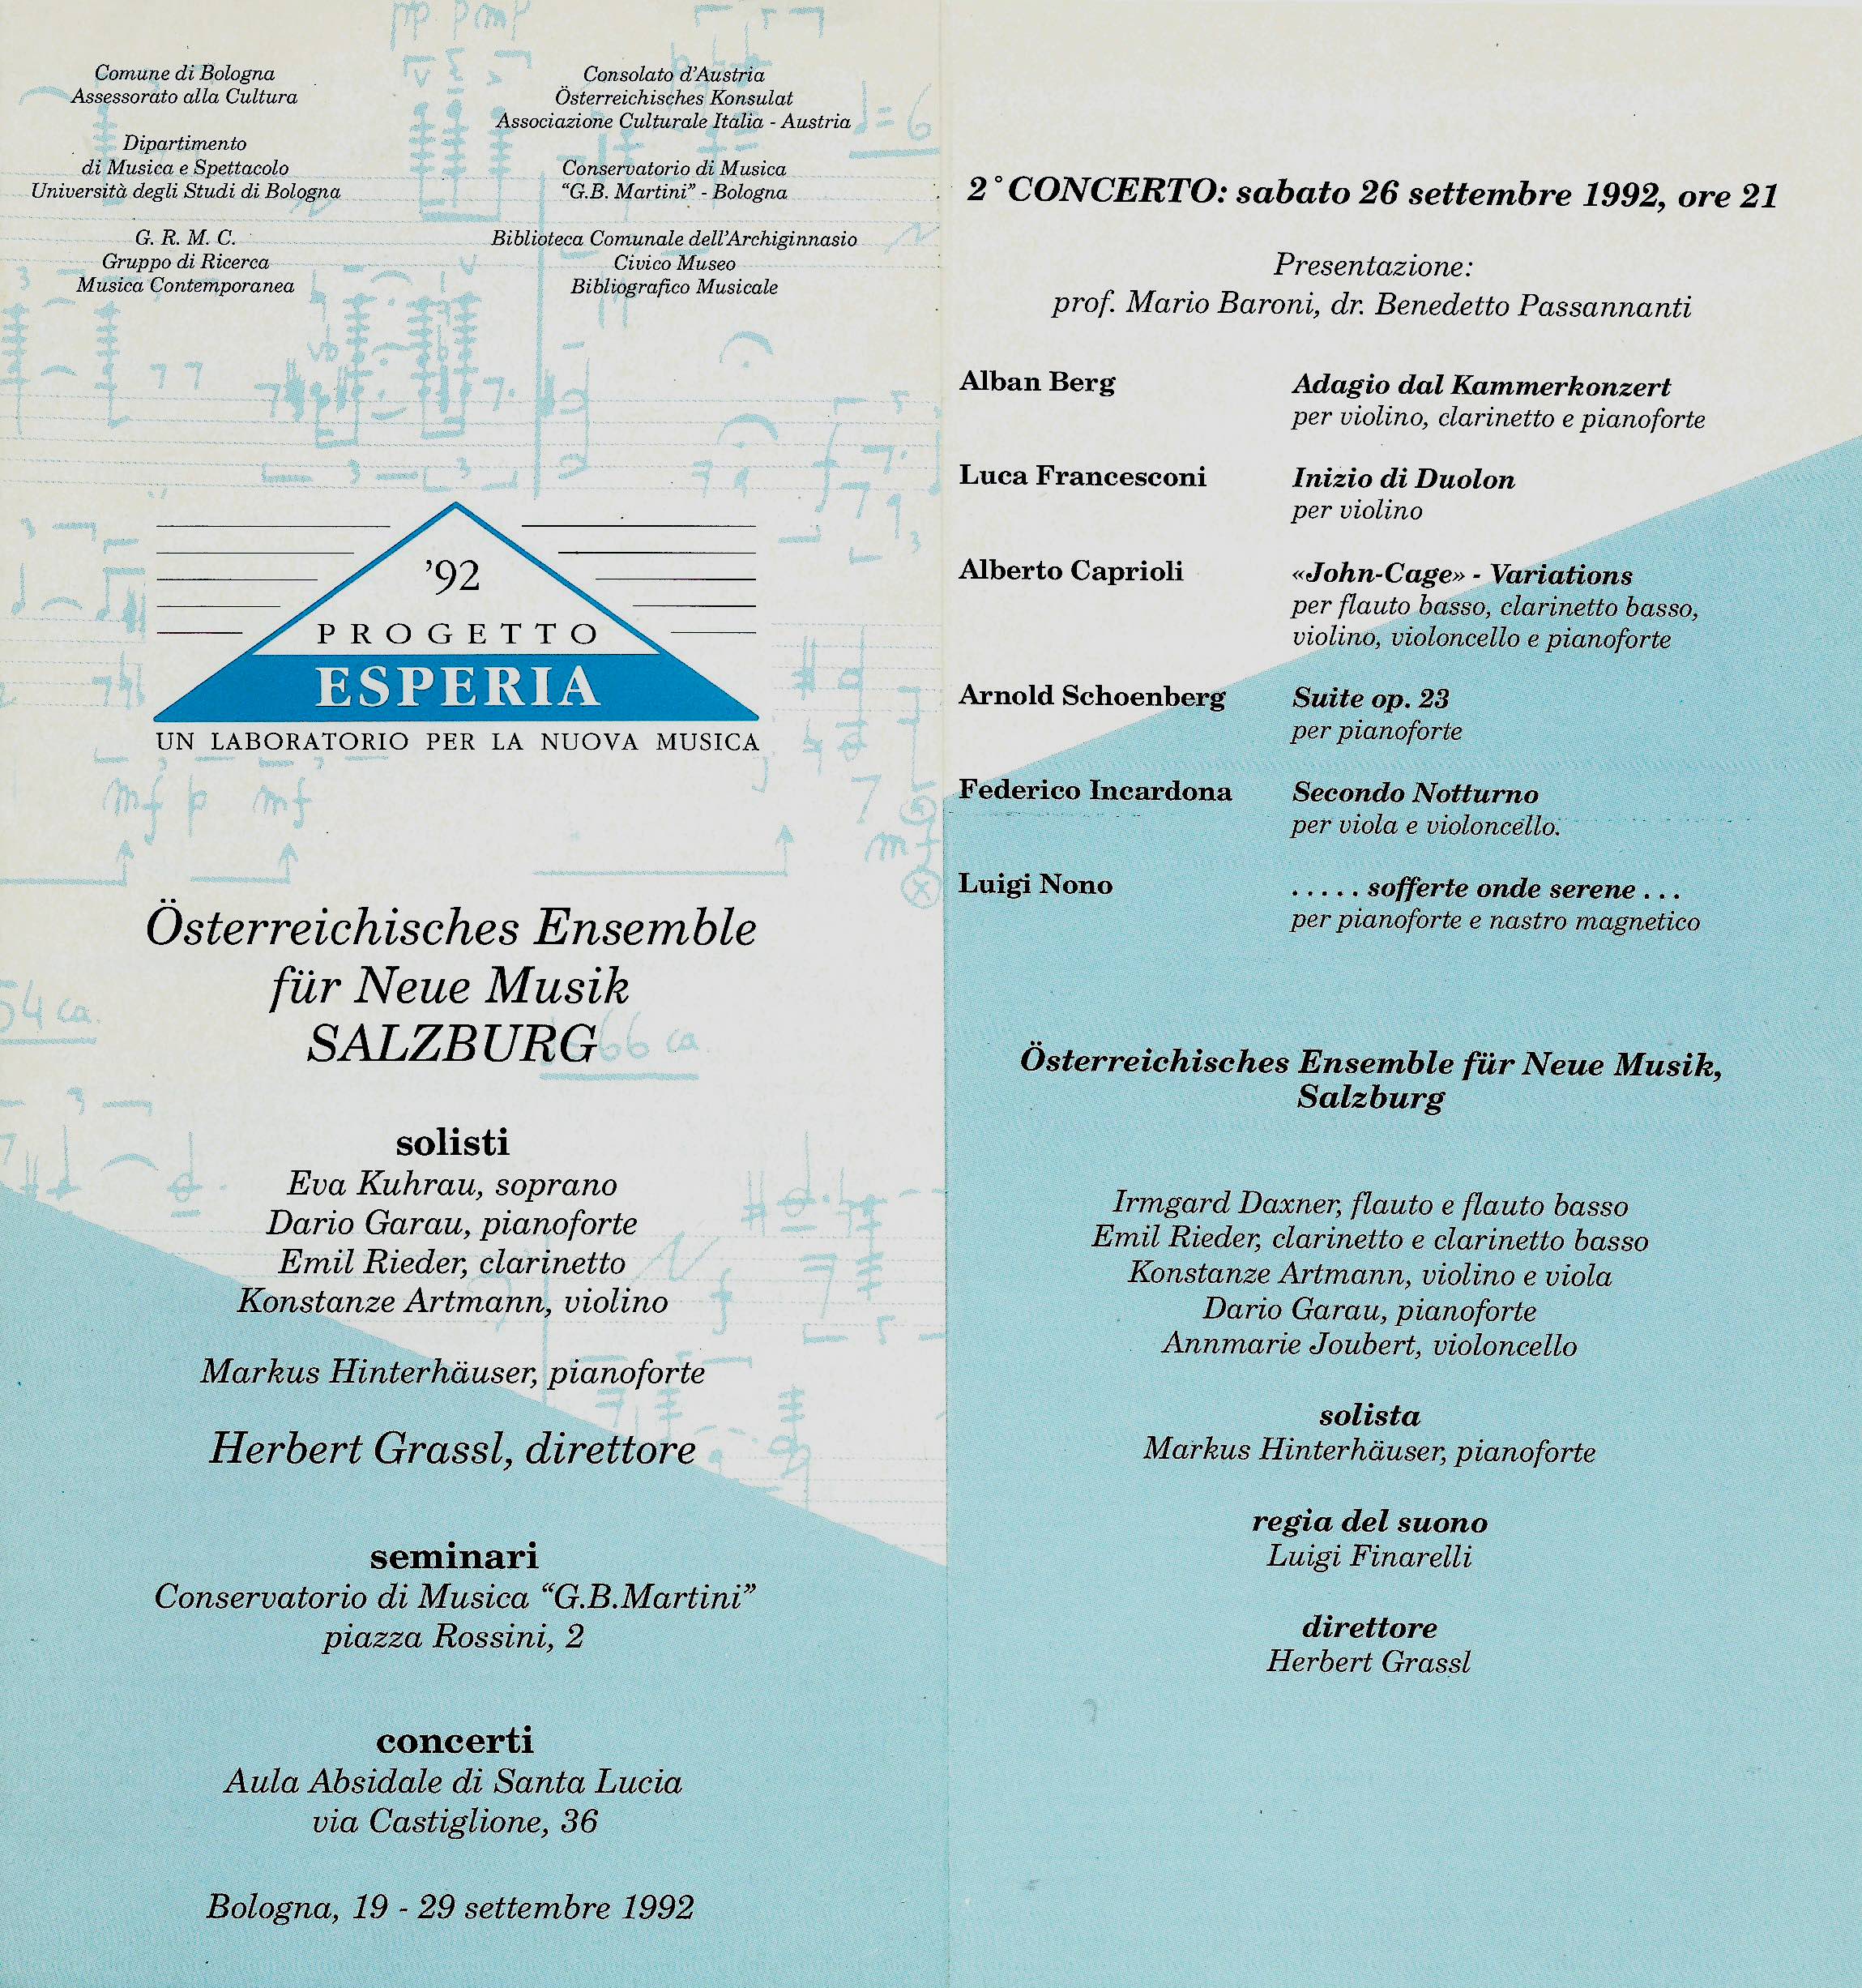 BOLOGNA, PROGETTO ESPERIA 1992. ALBERTO CAPRIOLI, JOHN CAGE VARIATIONS